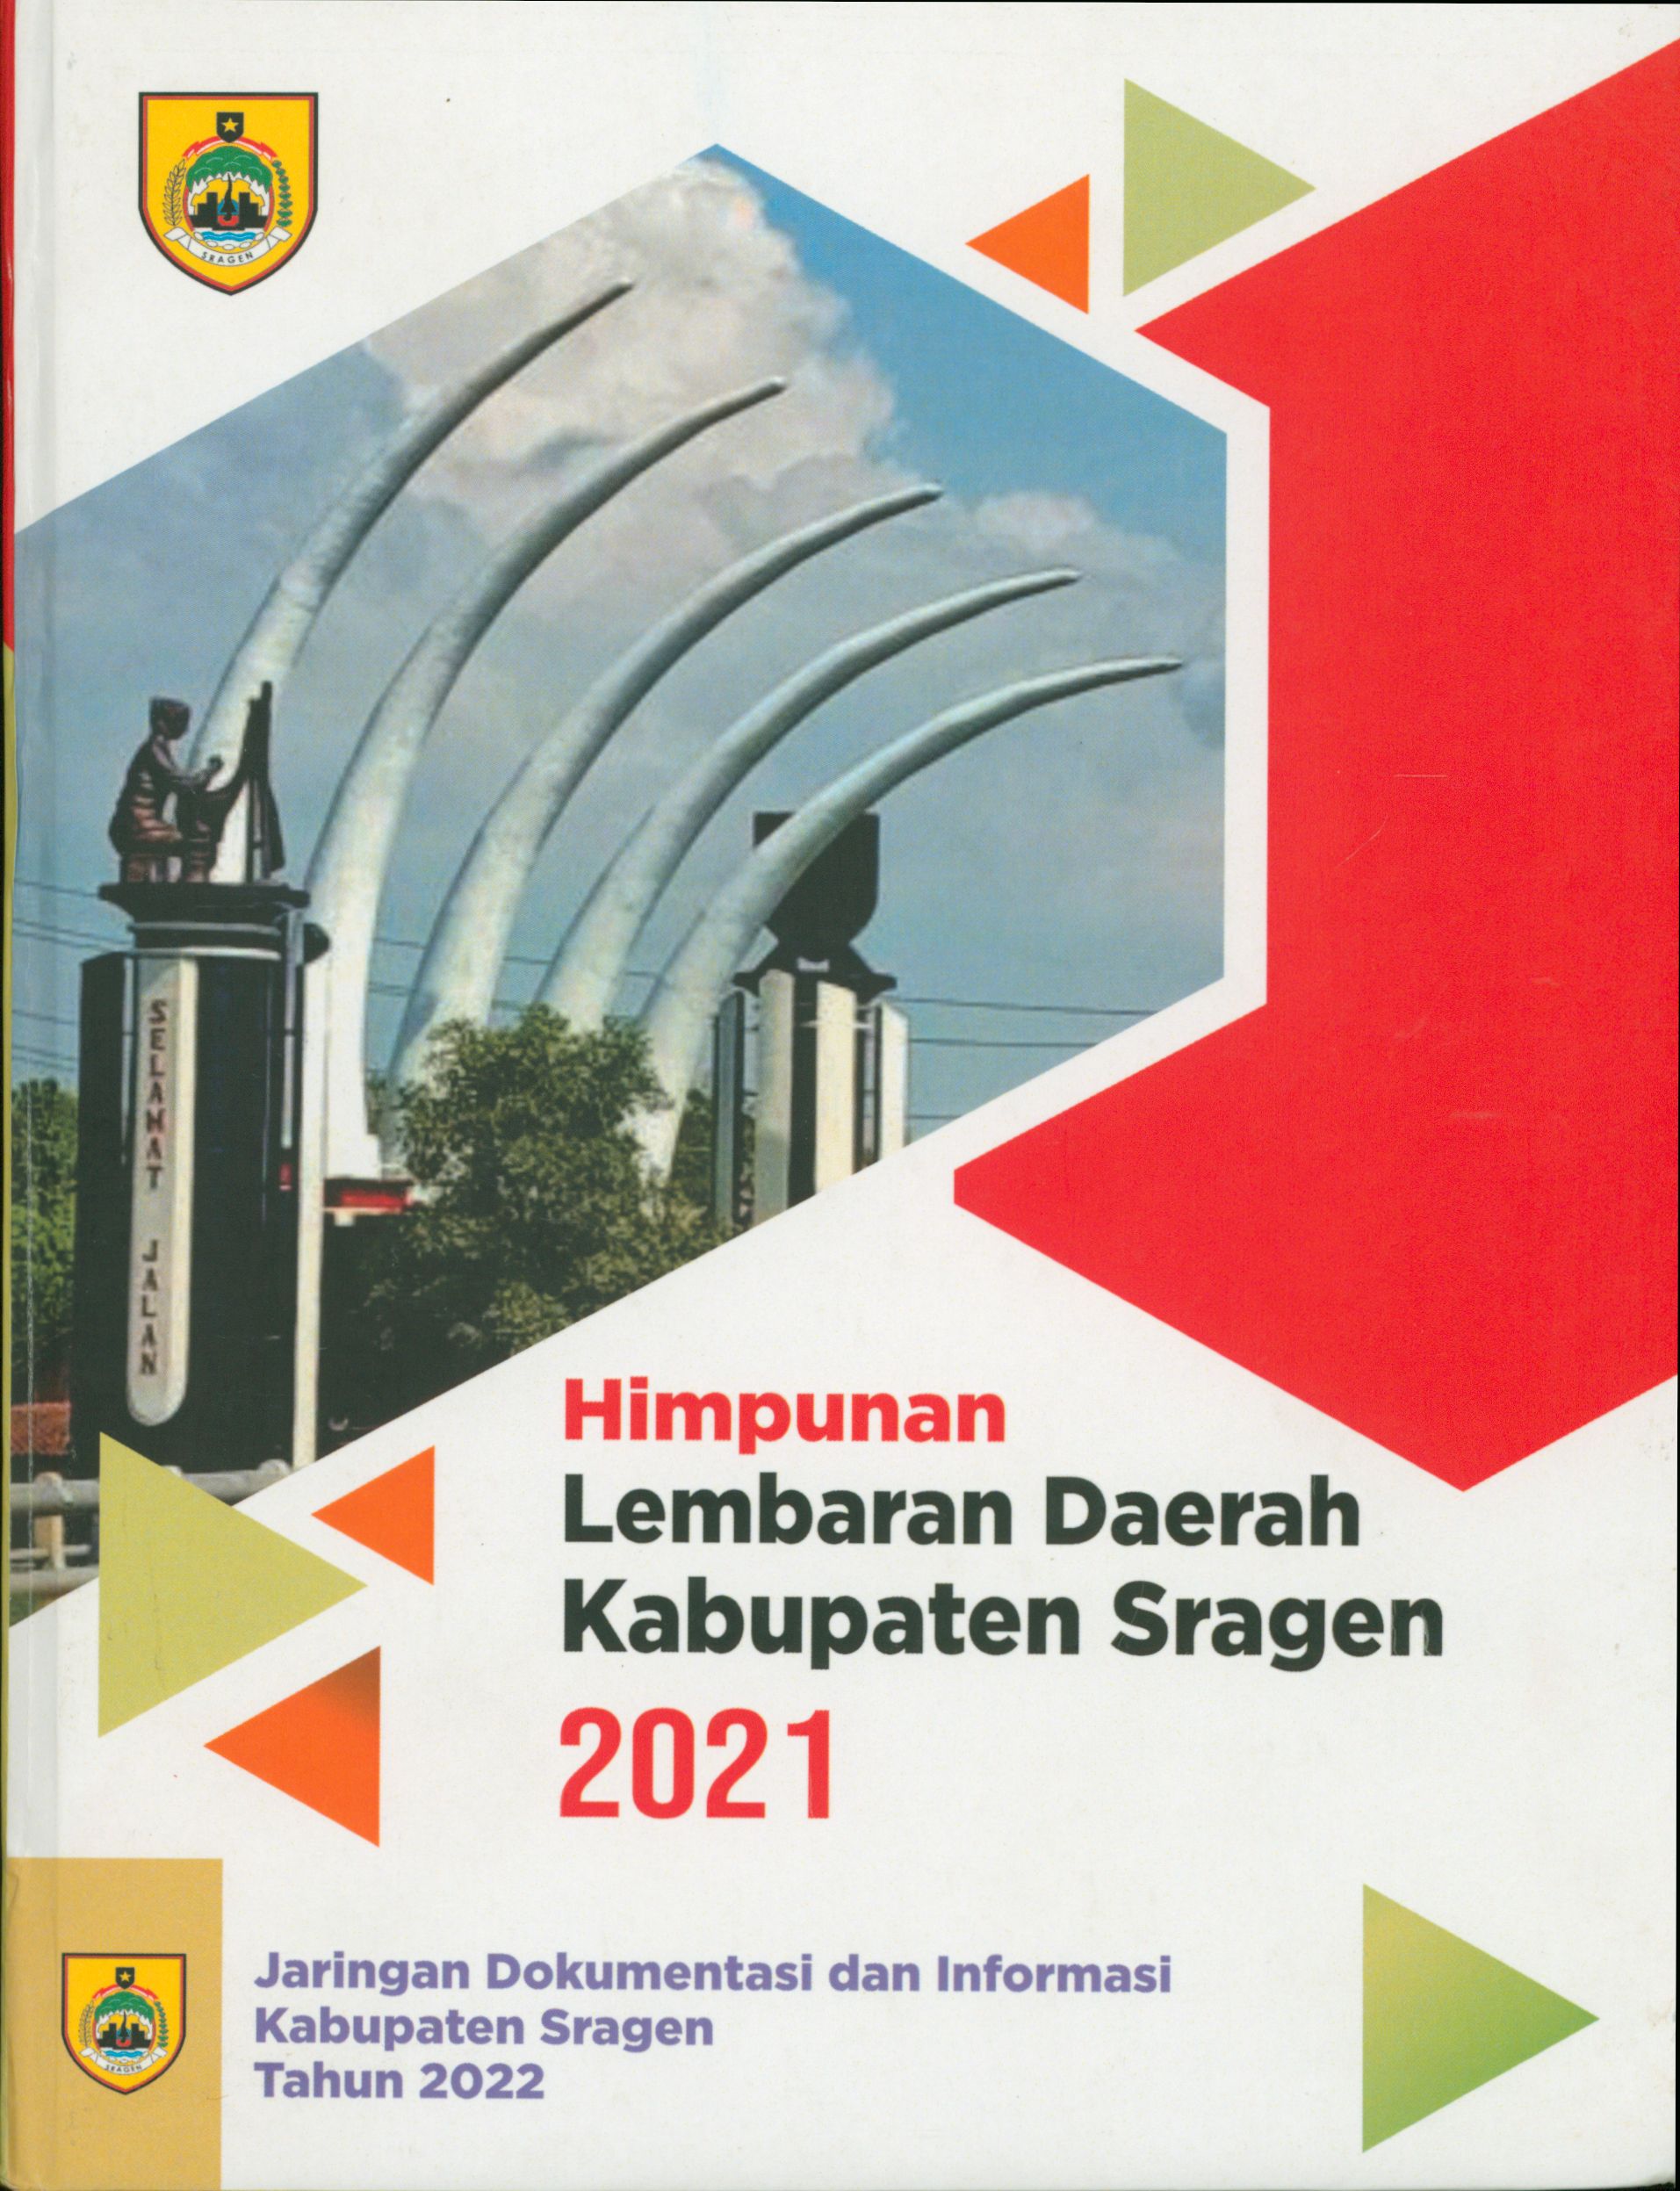 Himpunan Lembaran Daerah Kabupaten Sragen 2021